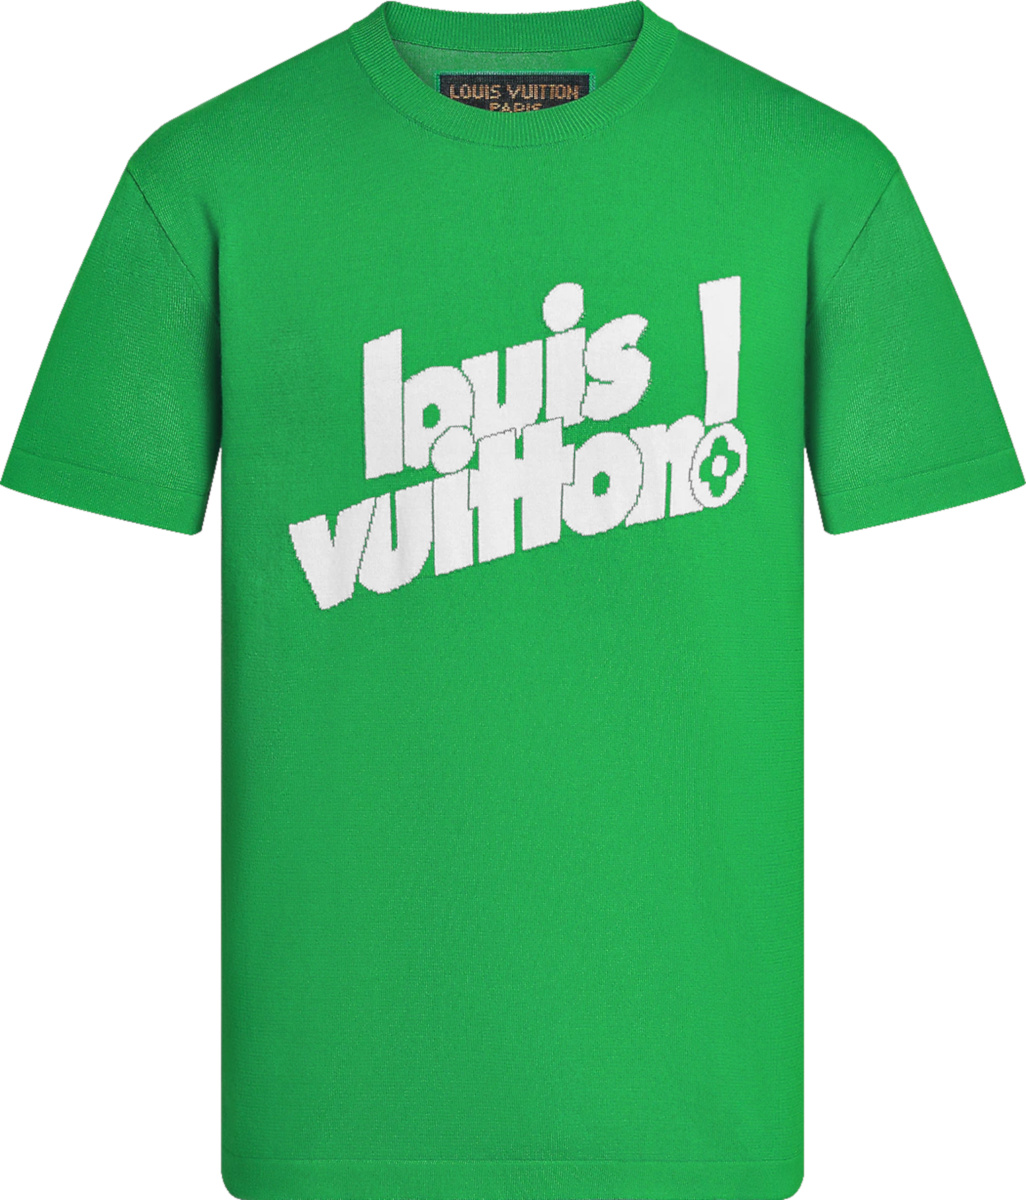 Cheap Sandals Louis Vuitton Green T Shirt, Louis Vuitton T Shirt Mens -  Allsoymade